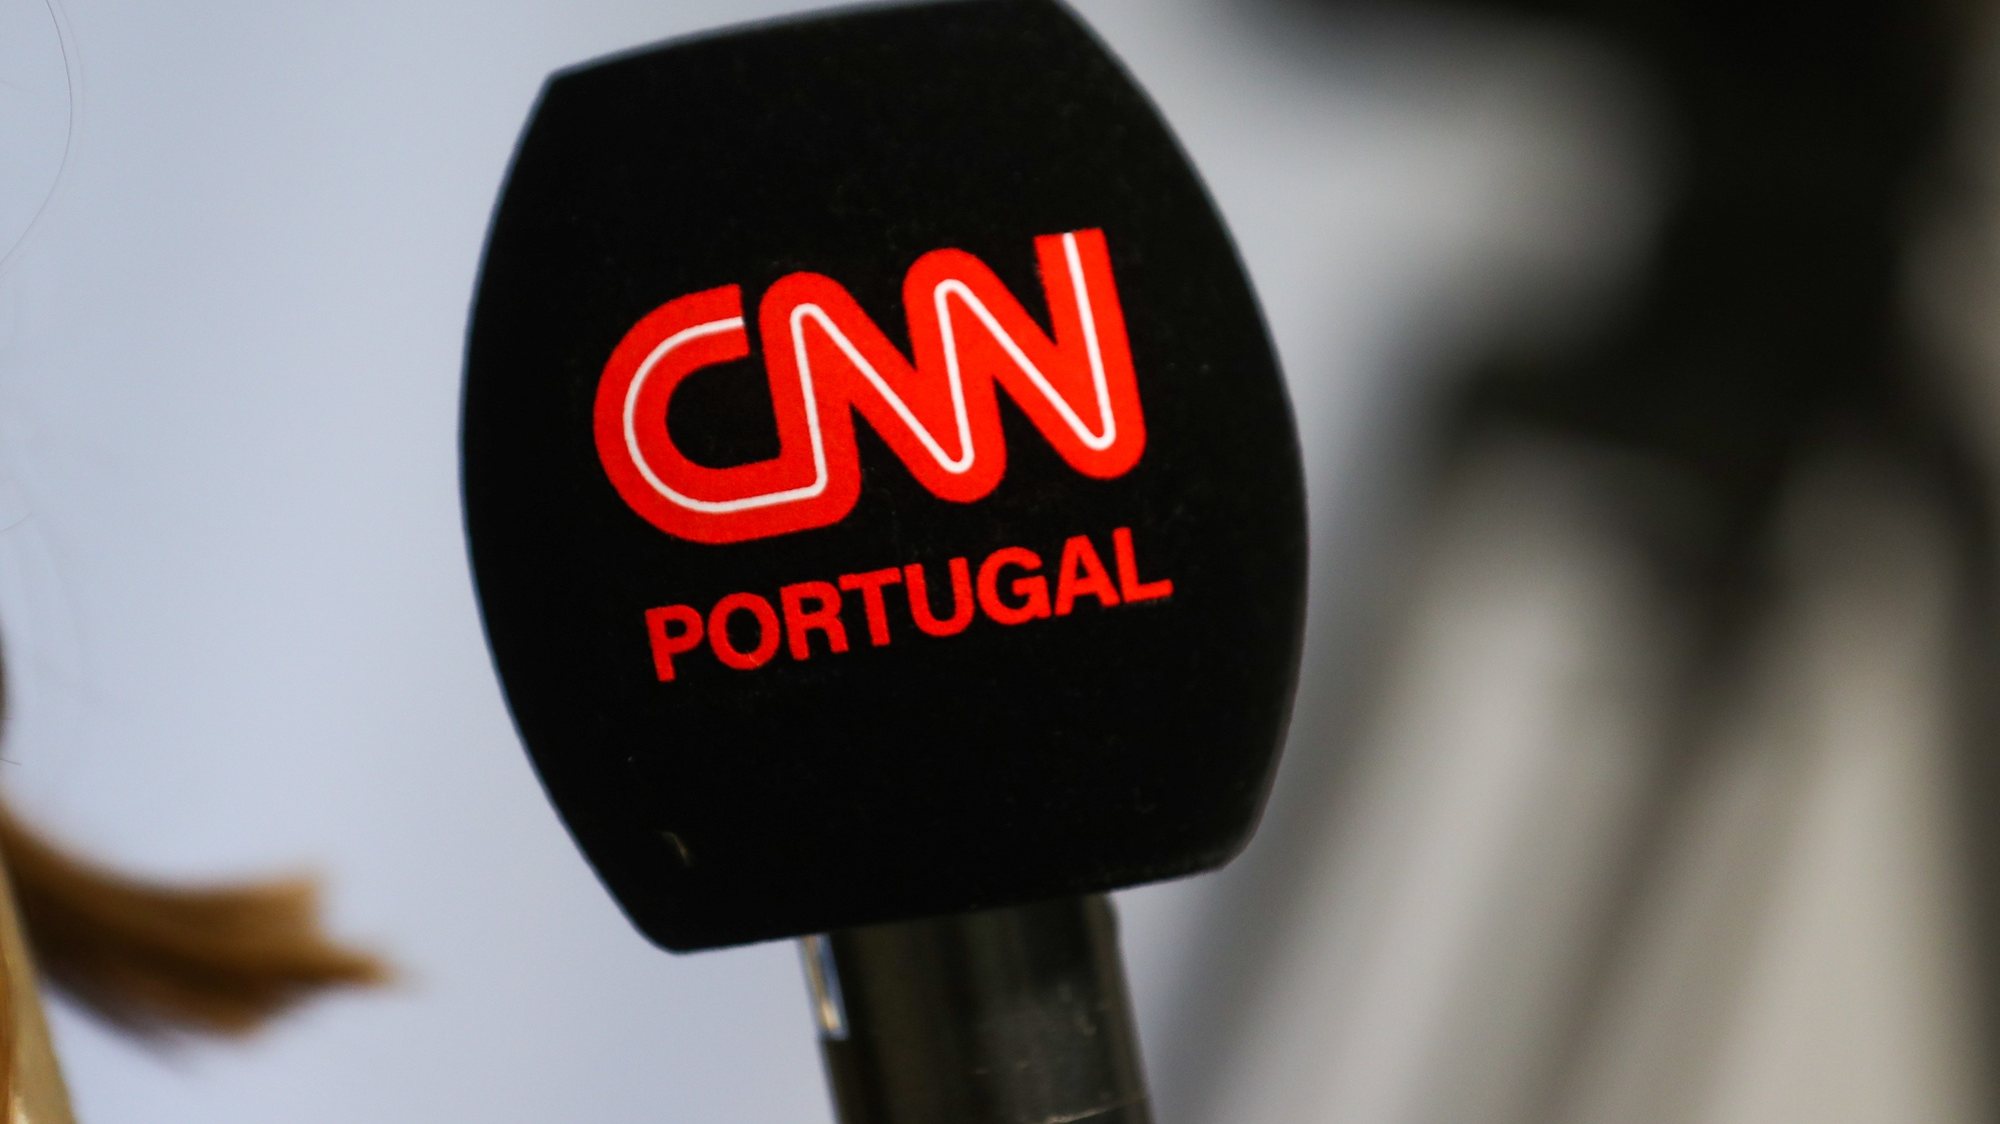 Microfone da CNN - Portugal, Lisboa, 03 de dezembro de 2021. ANTÓNIO COTRIM/LUSA